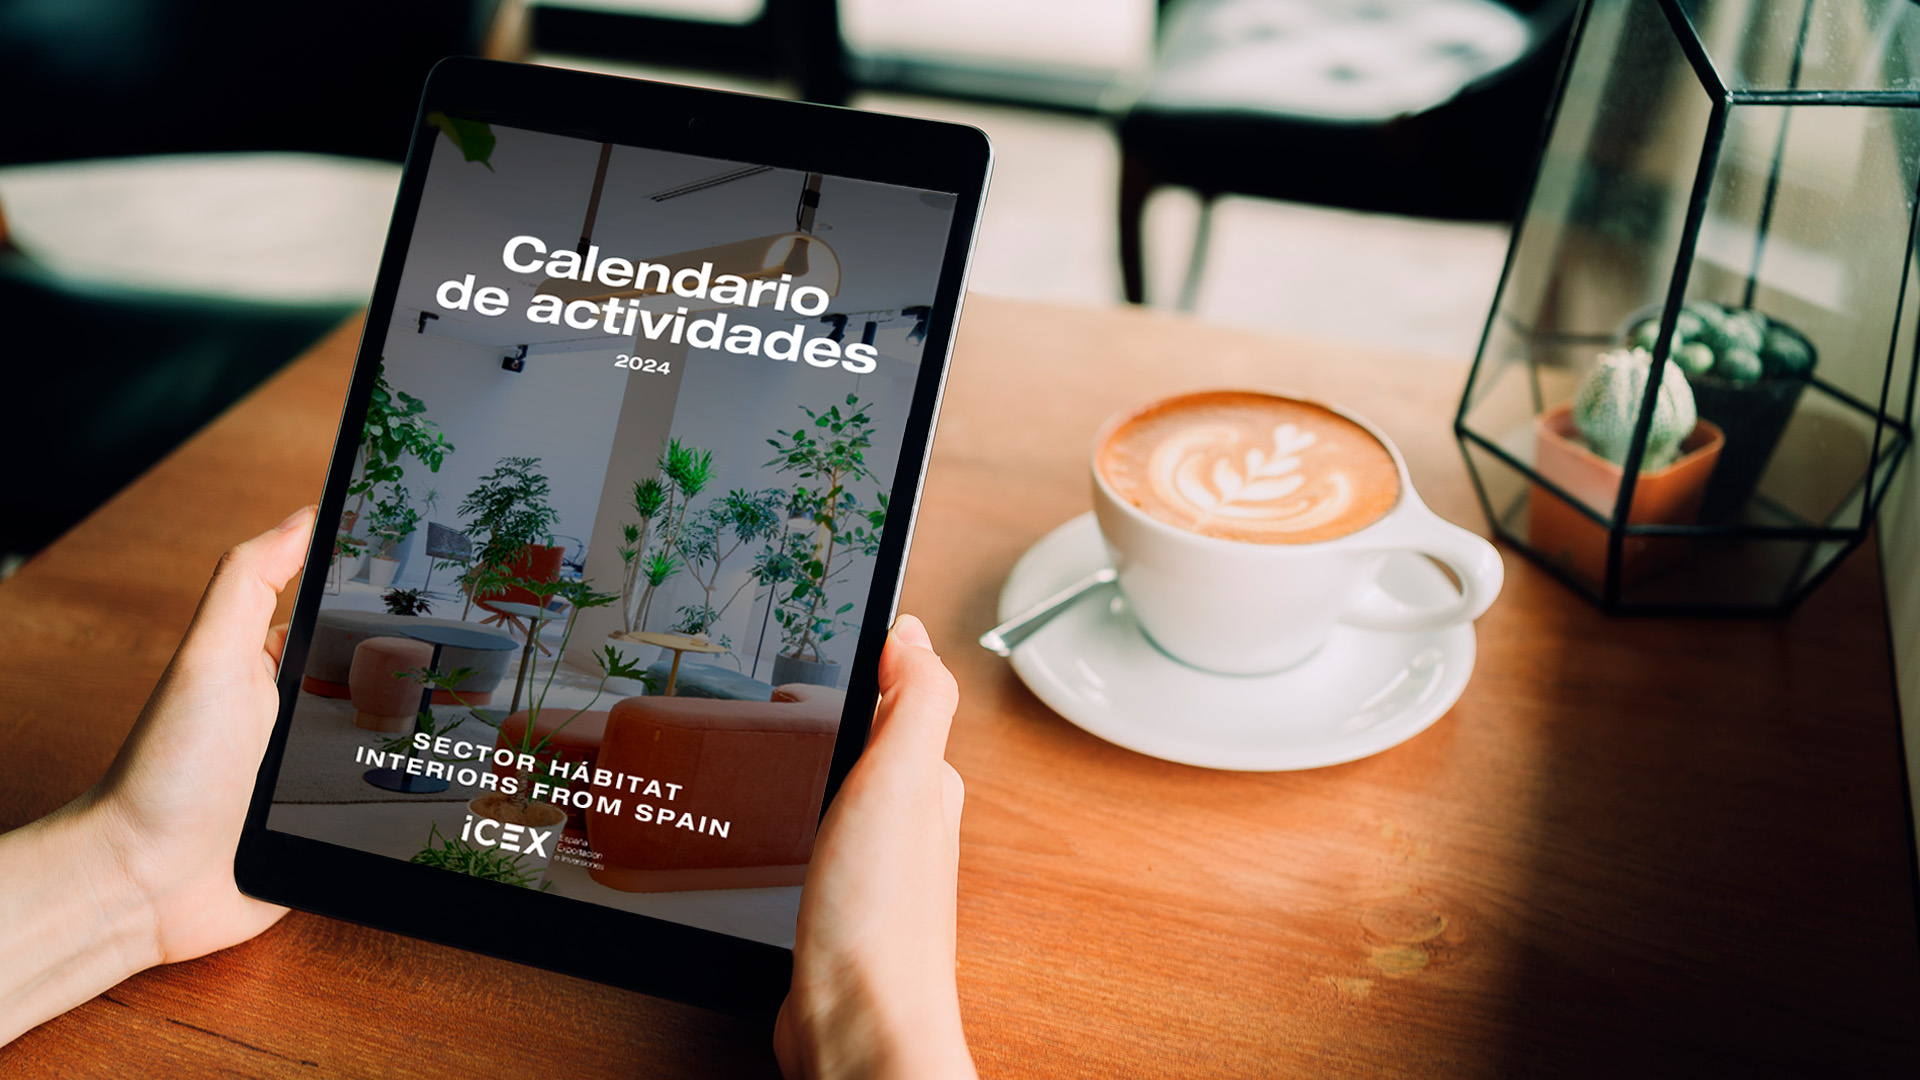 Una persona sostiene una tablet visualizando la portada del calendario de actividades del sector hábitat de Interiors From Spain, ICEX